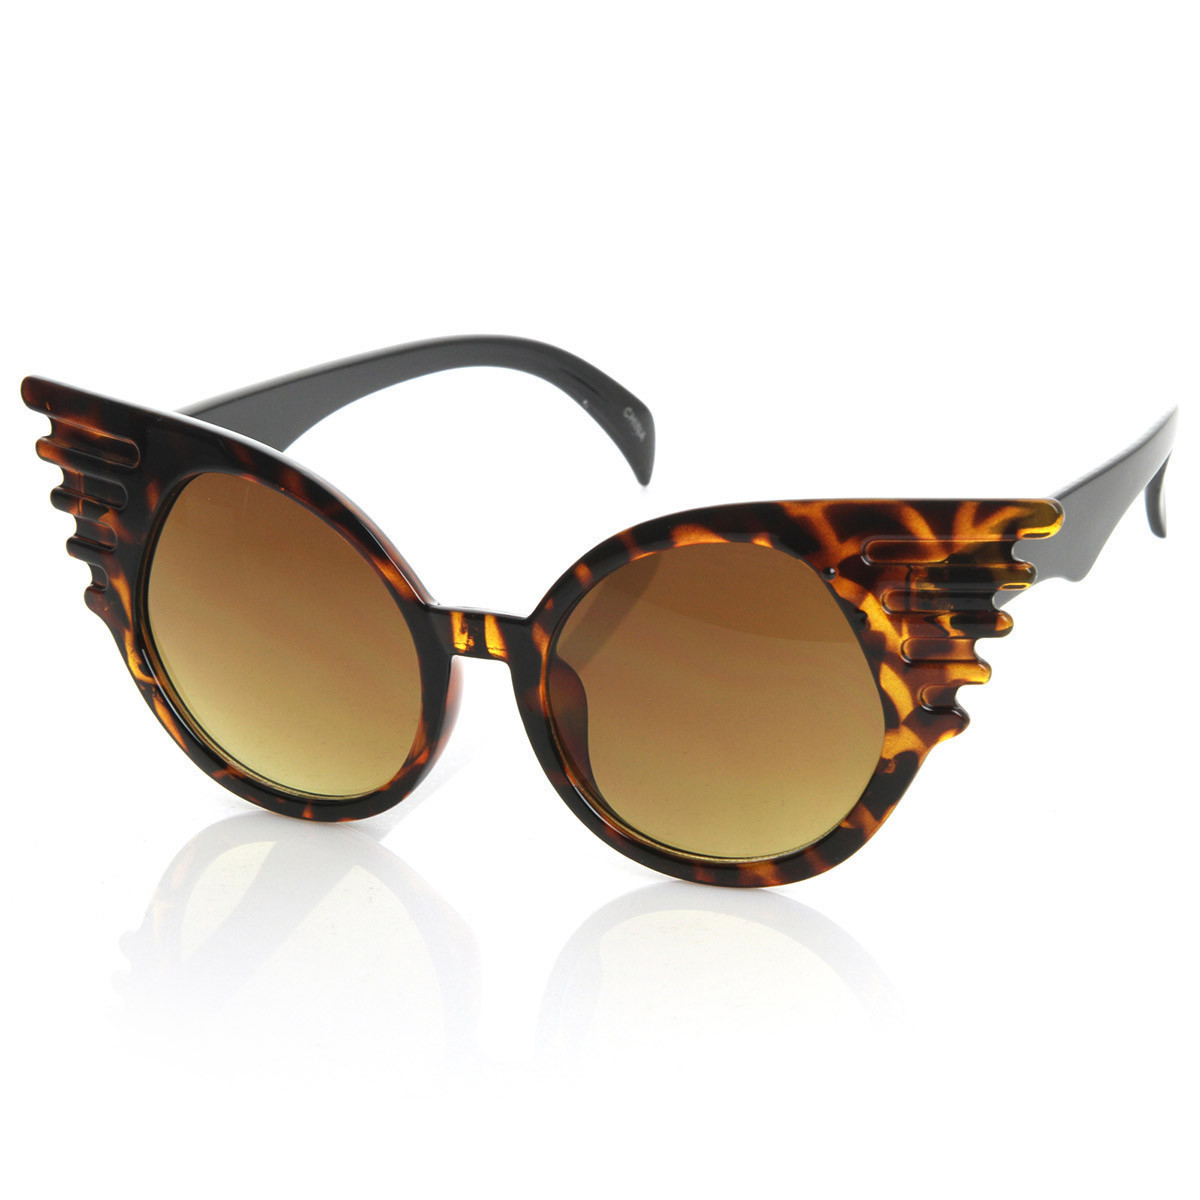 Designer Inspired Fashion Eccentric Unique Round Circle Winged Sunglasses - 8581